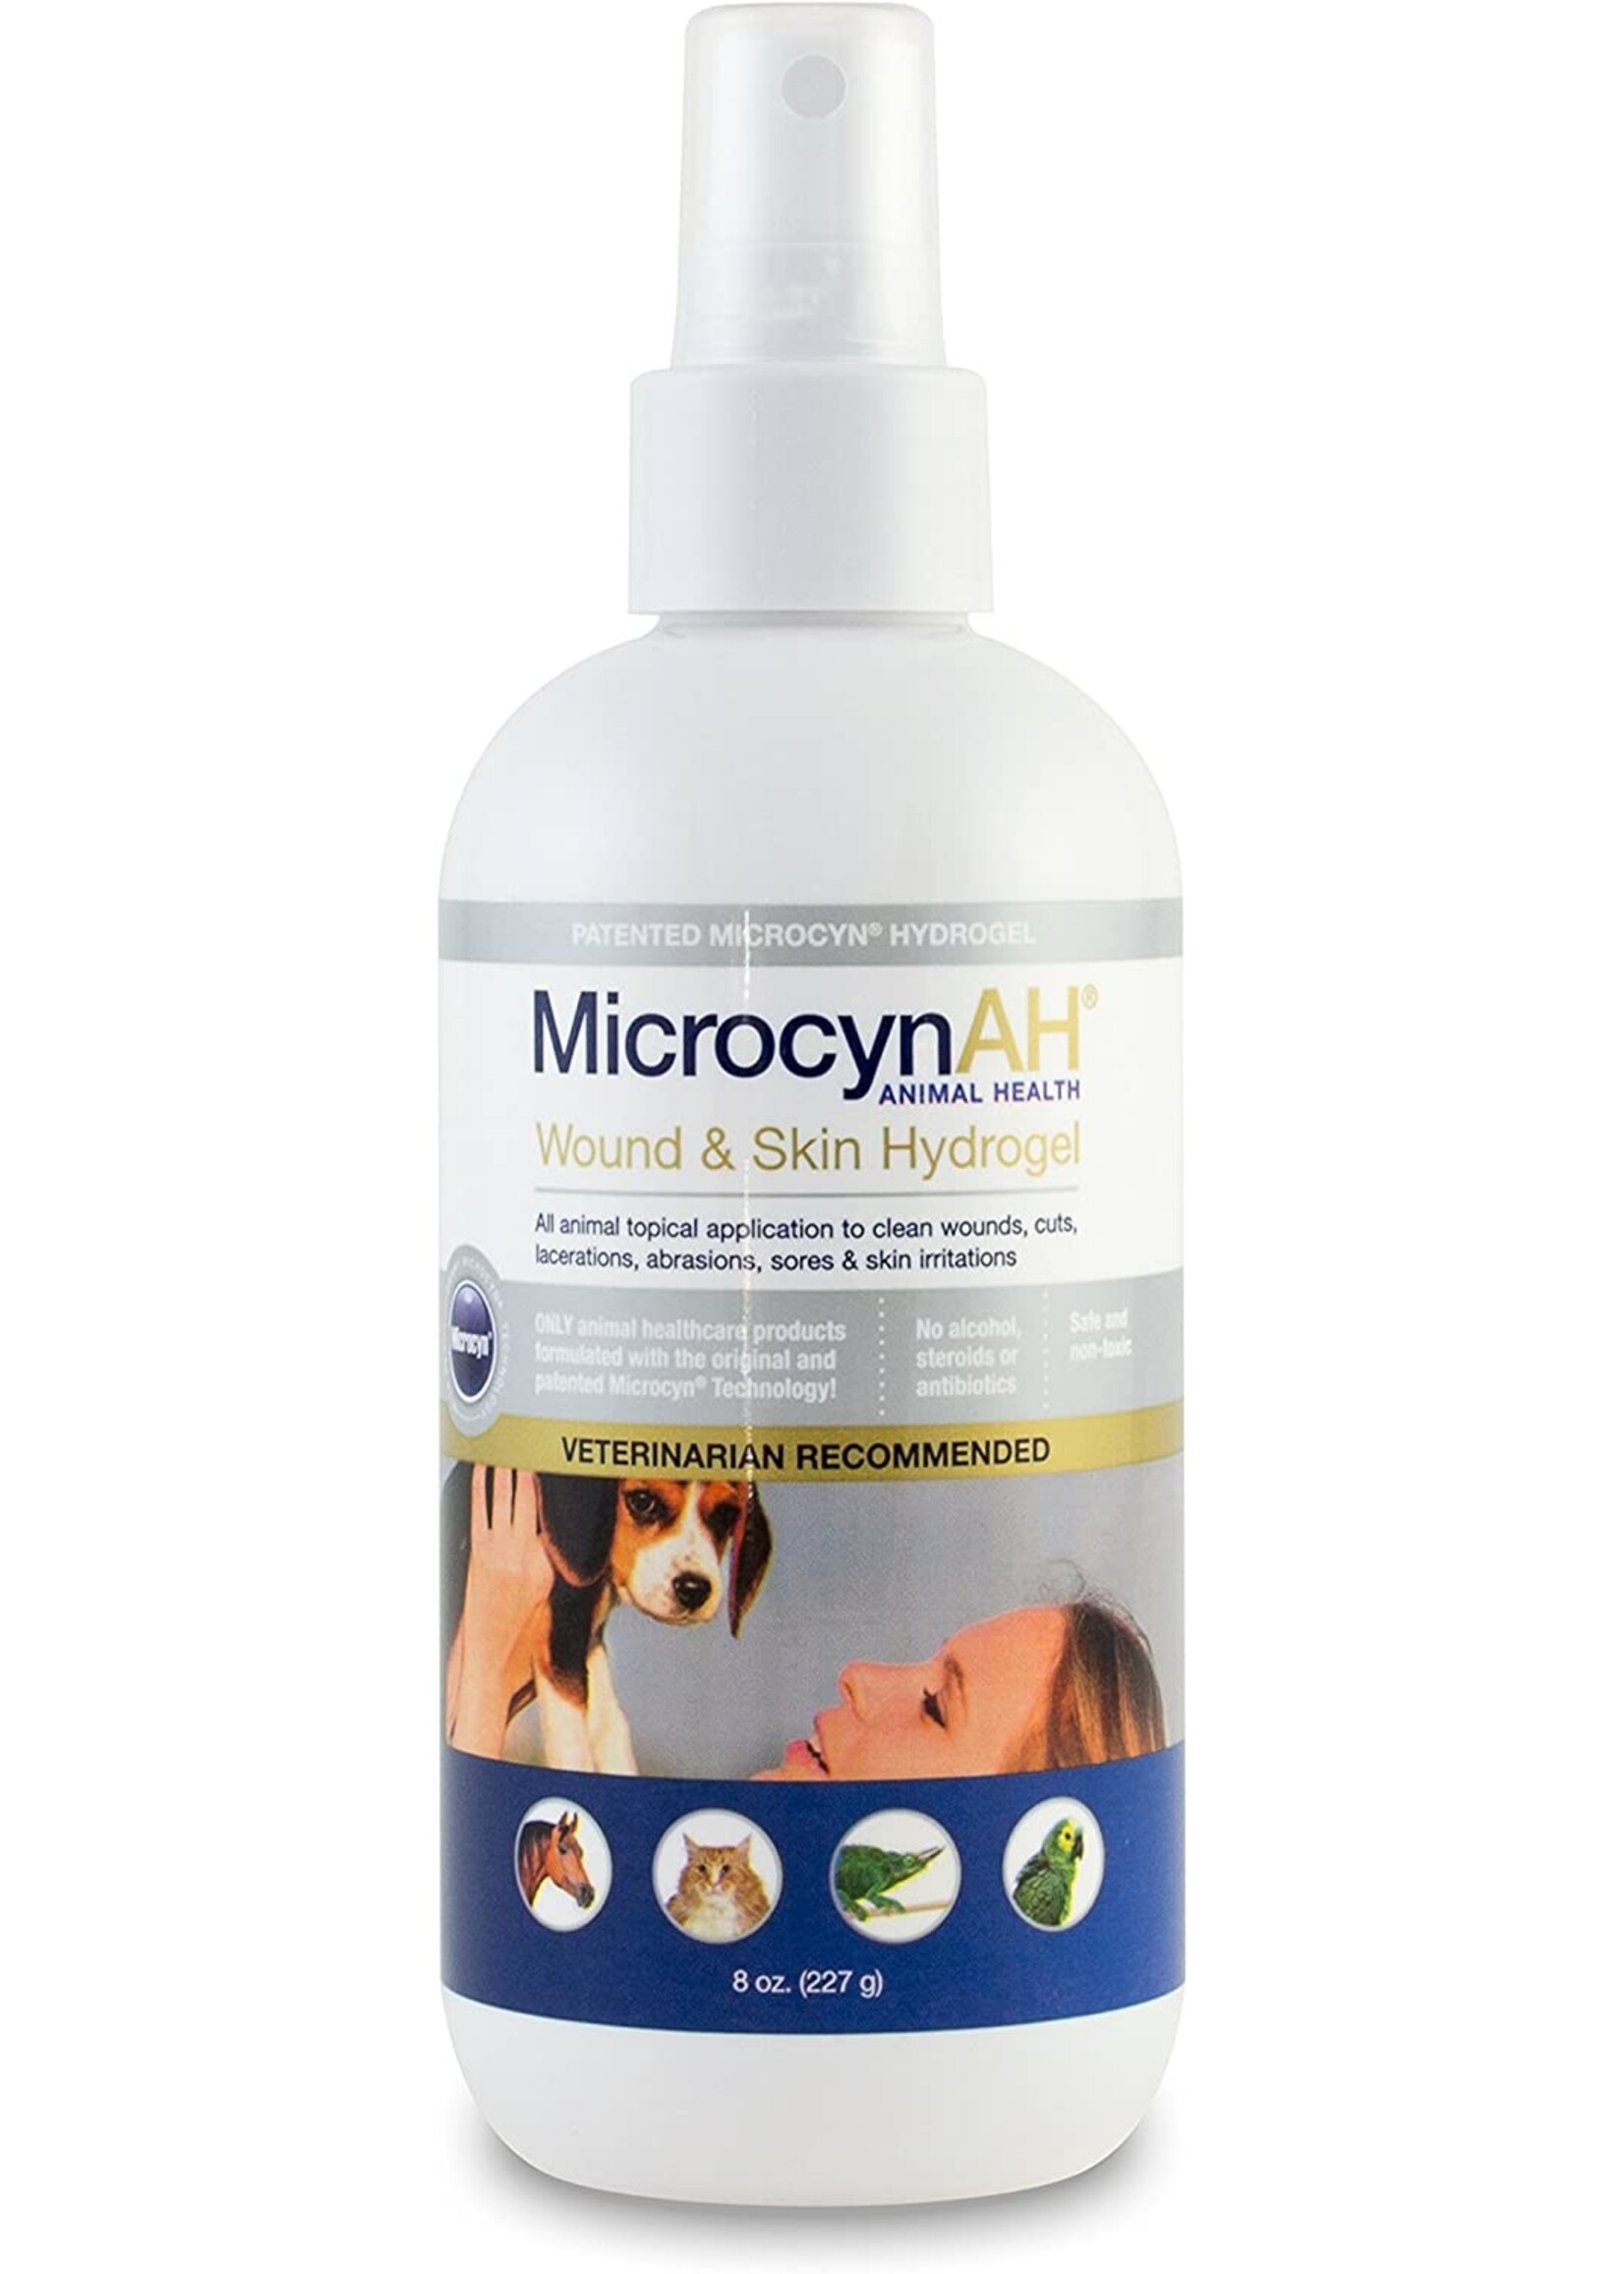 MicrocynAH MicrocynAH Wound & Skin Care Hyrogel